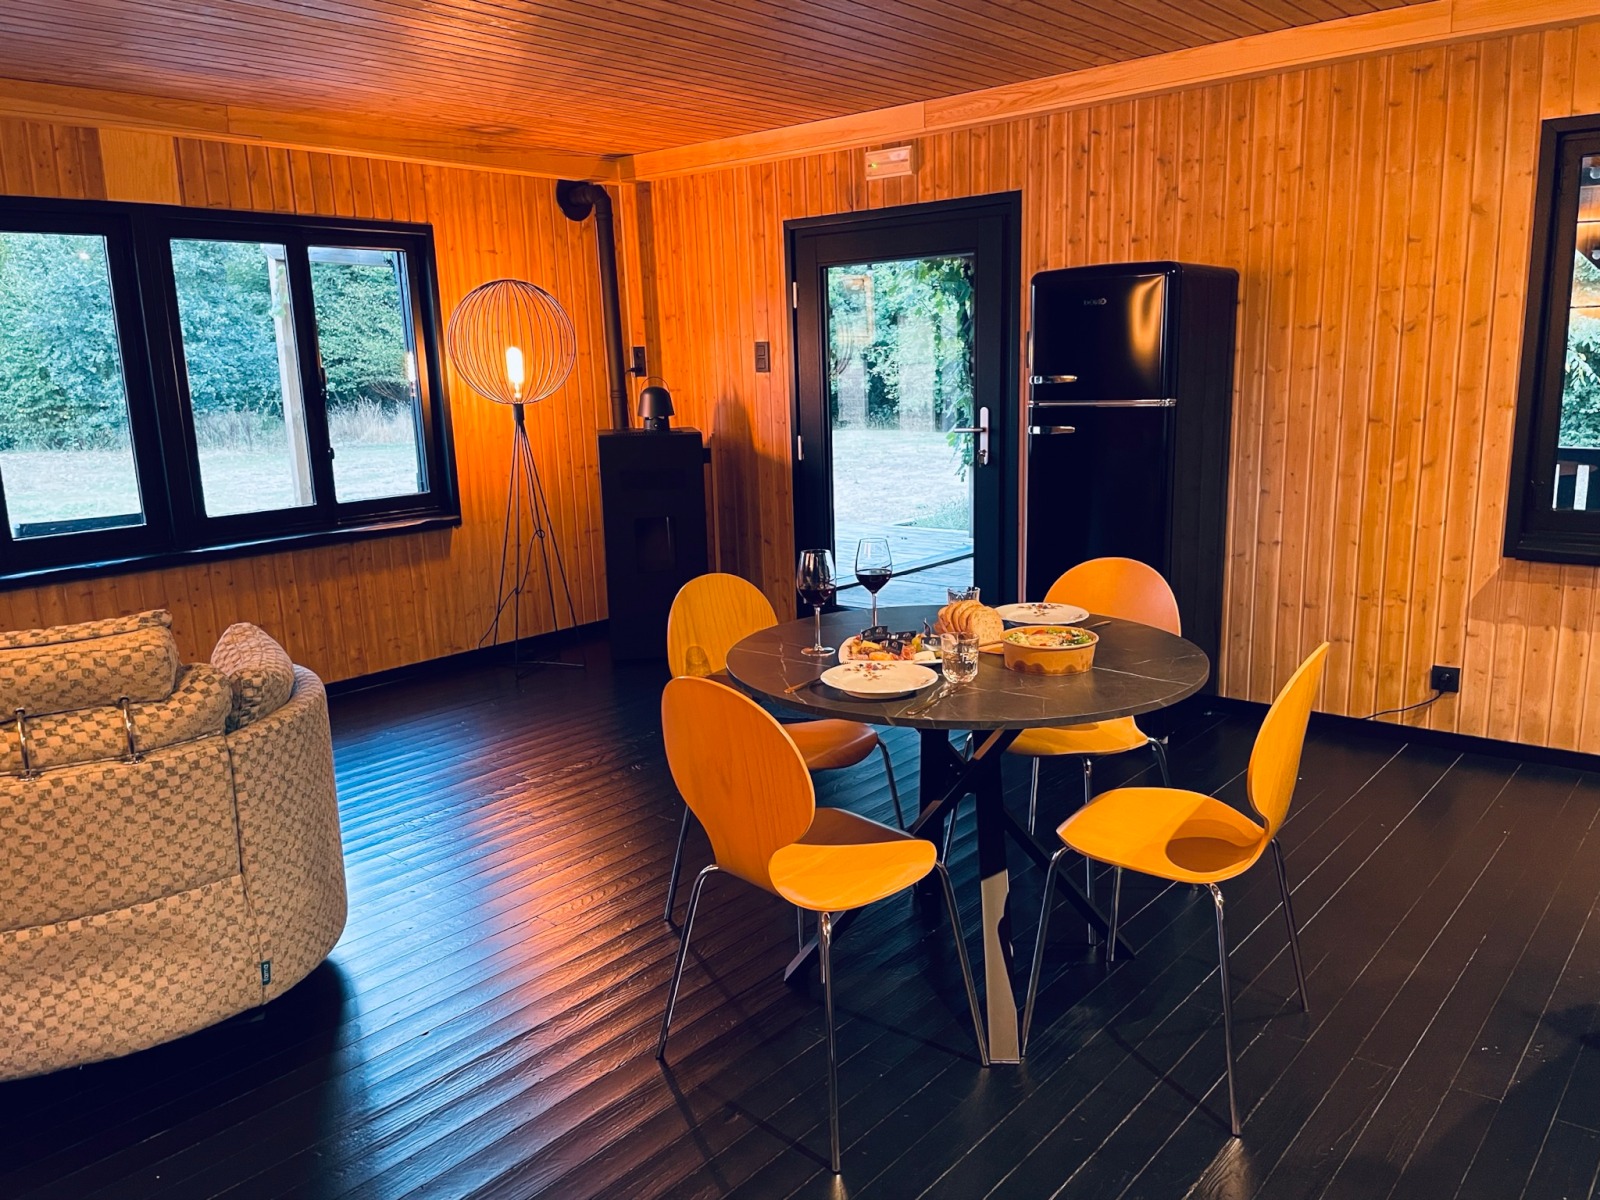 Wohnzimmer, Ferienunterkunft Ô Nano in der Nähe von Dalhem in der Provinz Lüttich